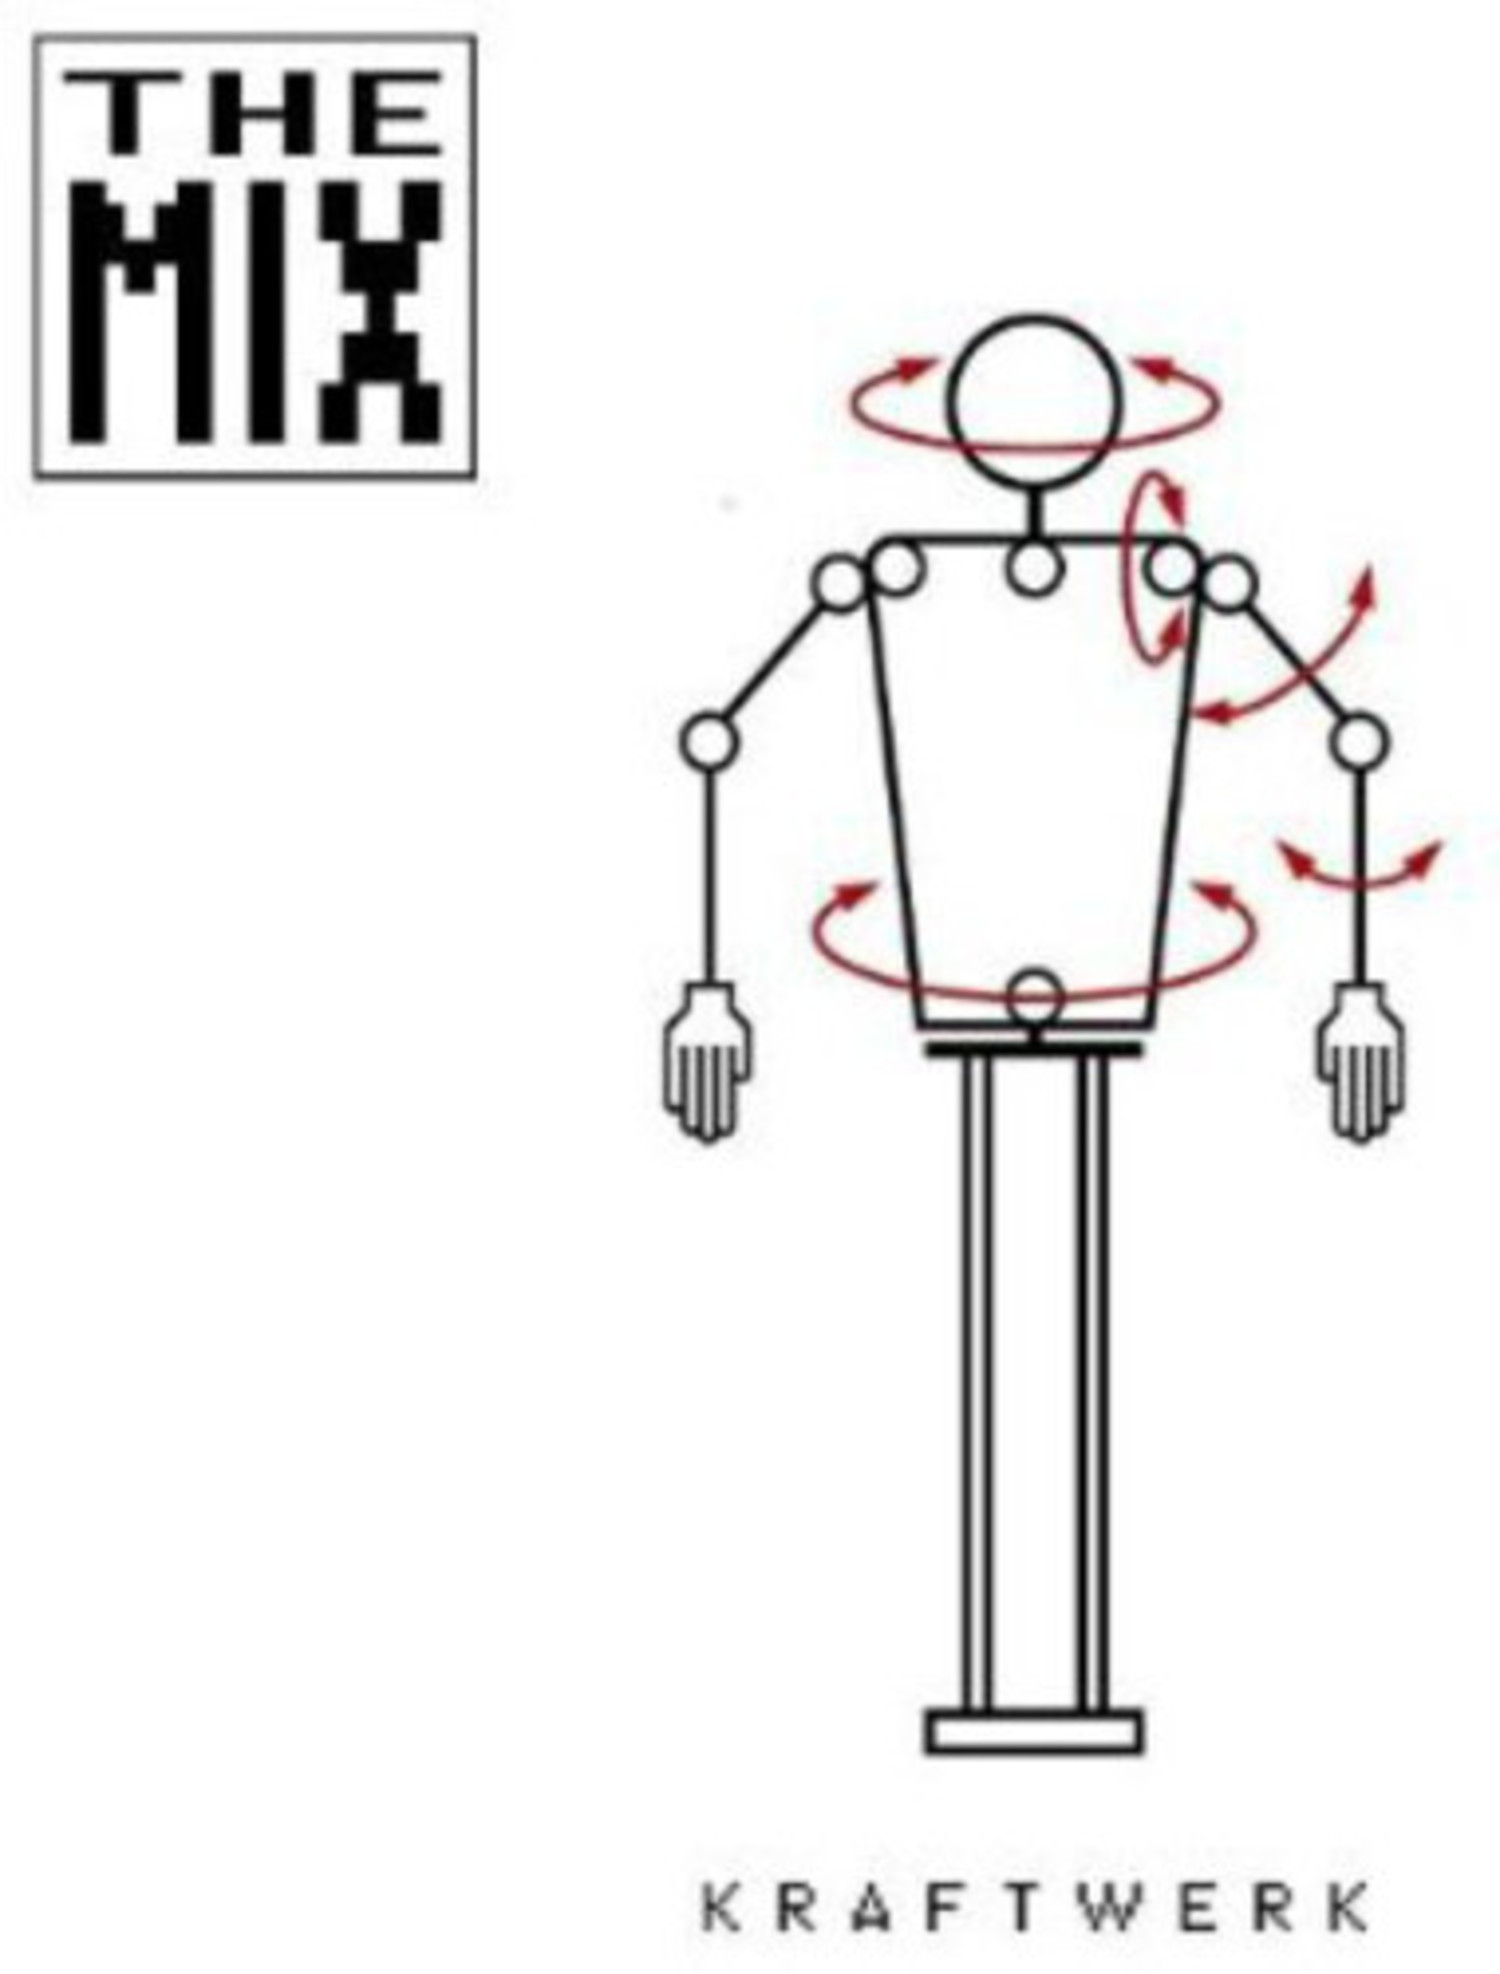 Kraftwerk - Mix 2LP (white vinyl) Trax Records